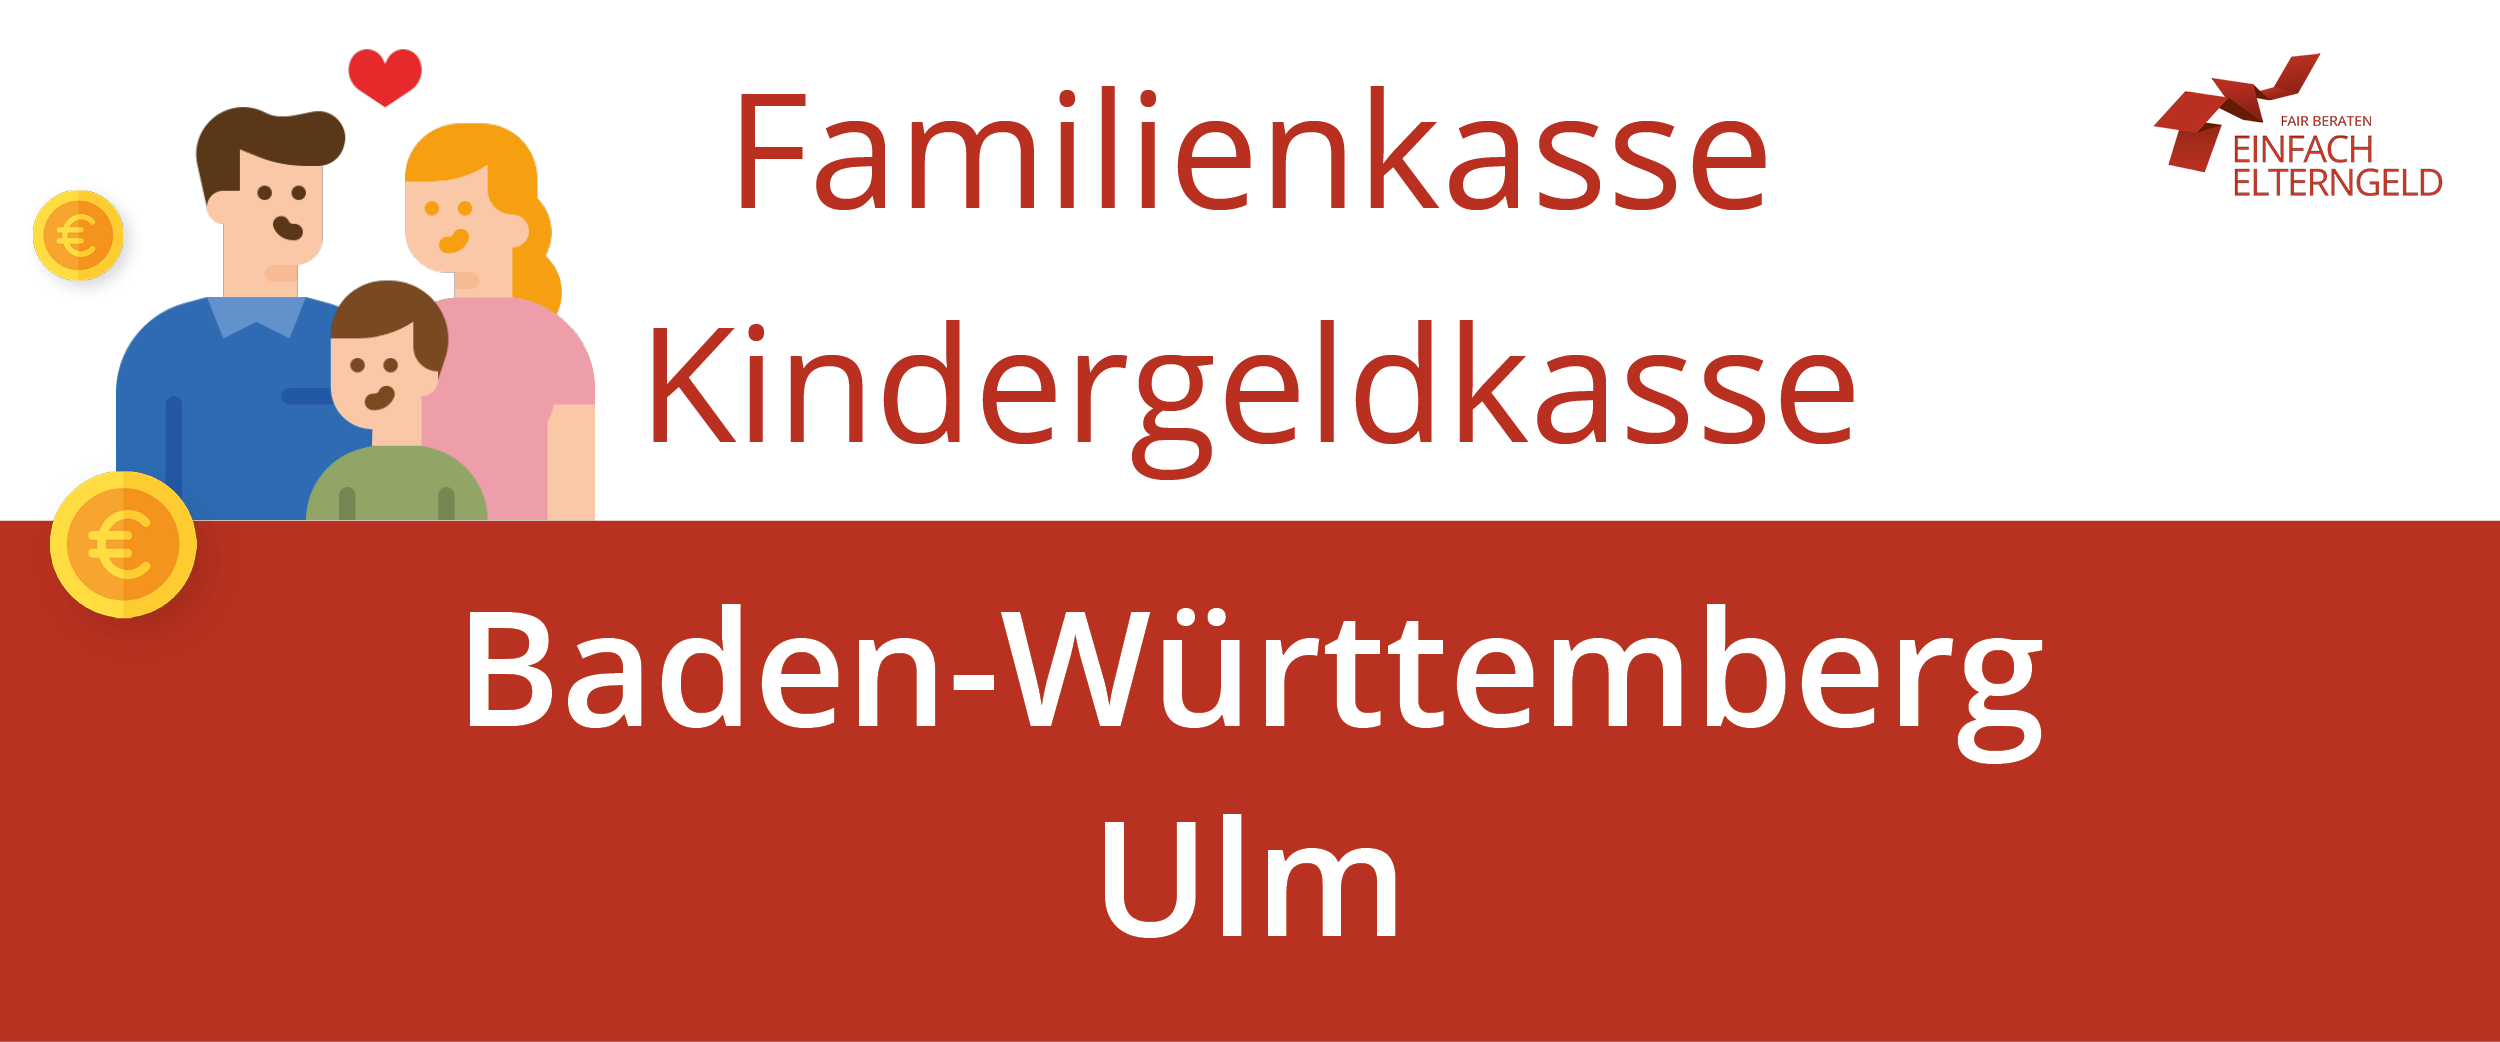 Familienkasse Kindergeldkasse Baden-Württemberg Ulm - So erreichen Sie Ihre Familienkasse.